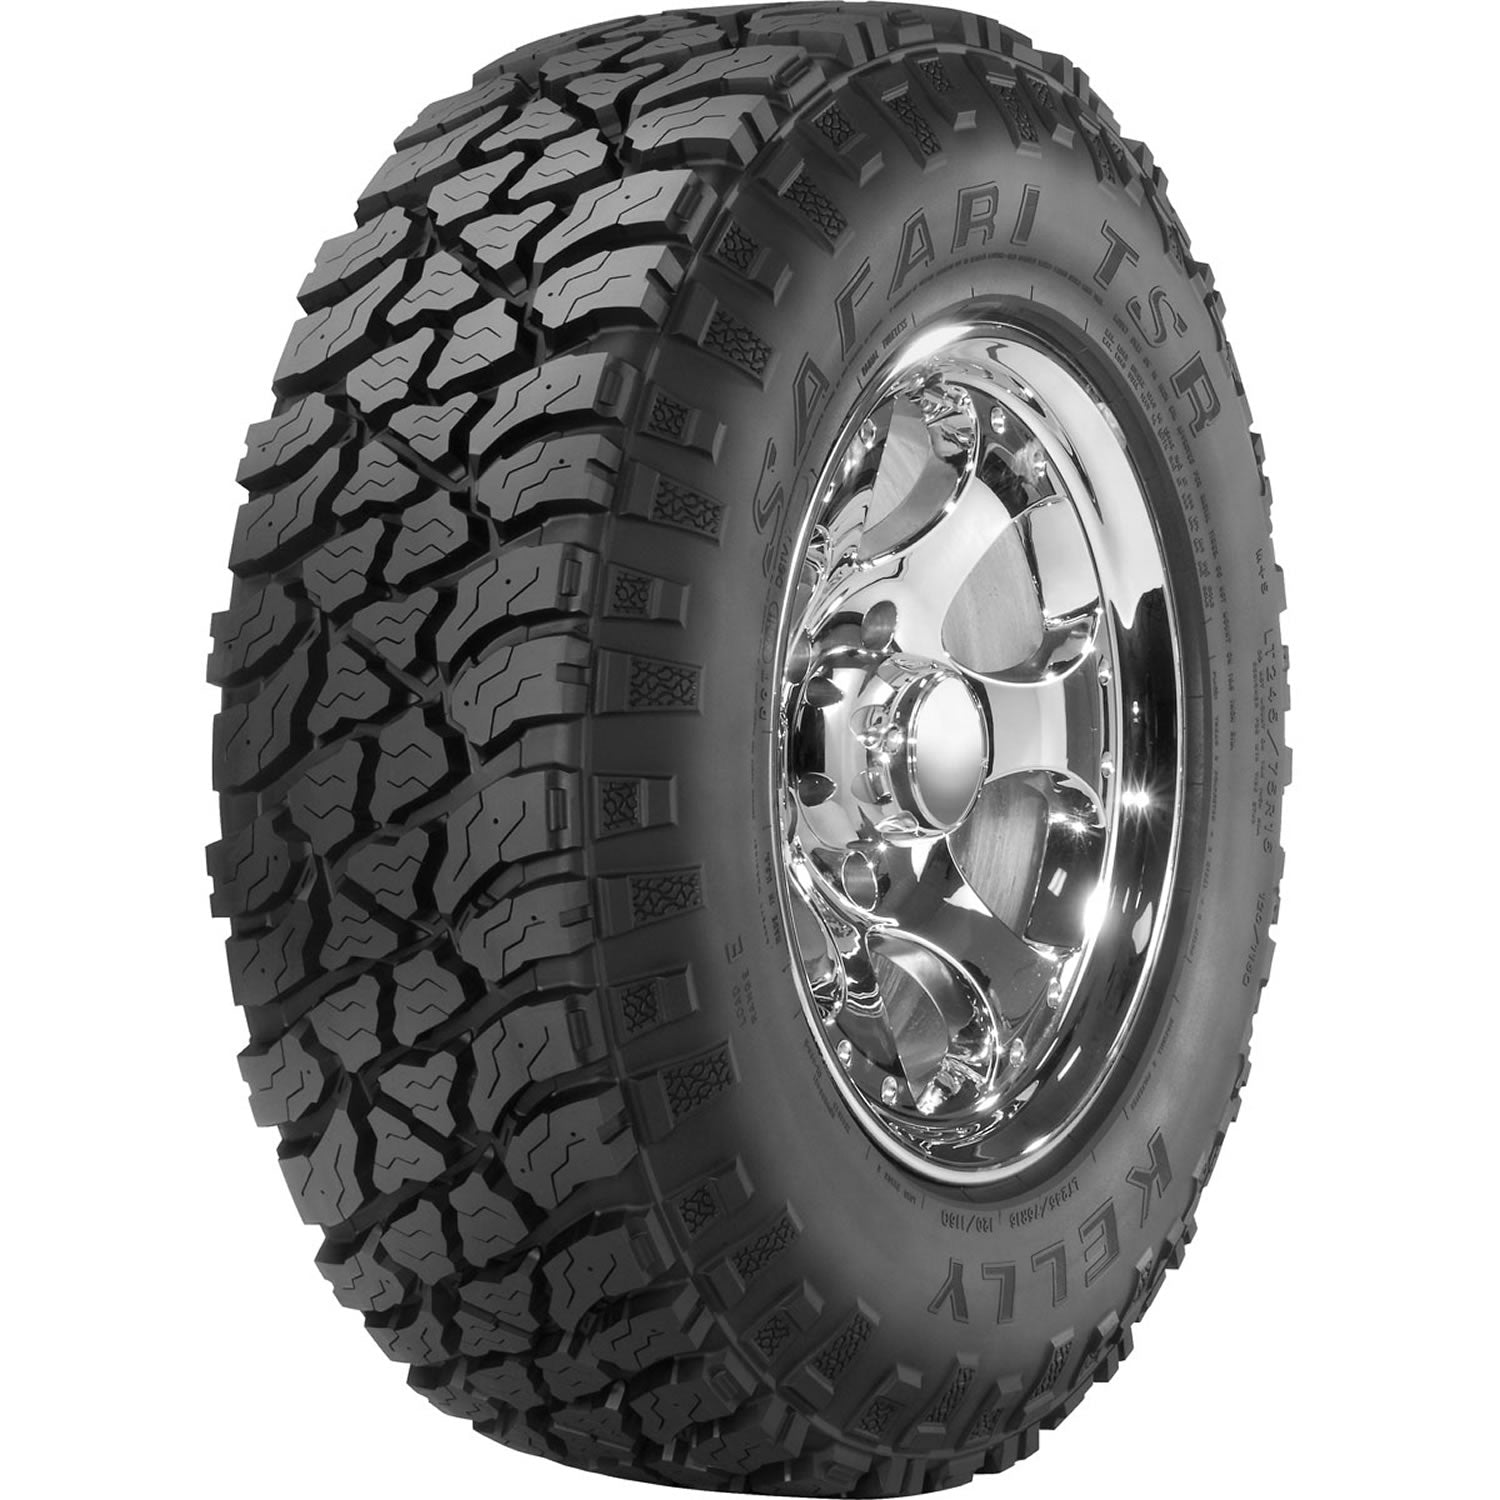 KELLY SAFARI TSR LT235/85R16 (31.7X9.3R 16) Tires